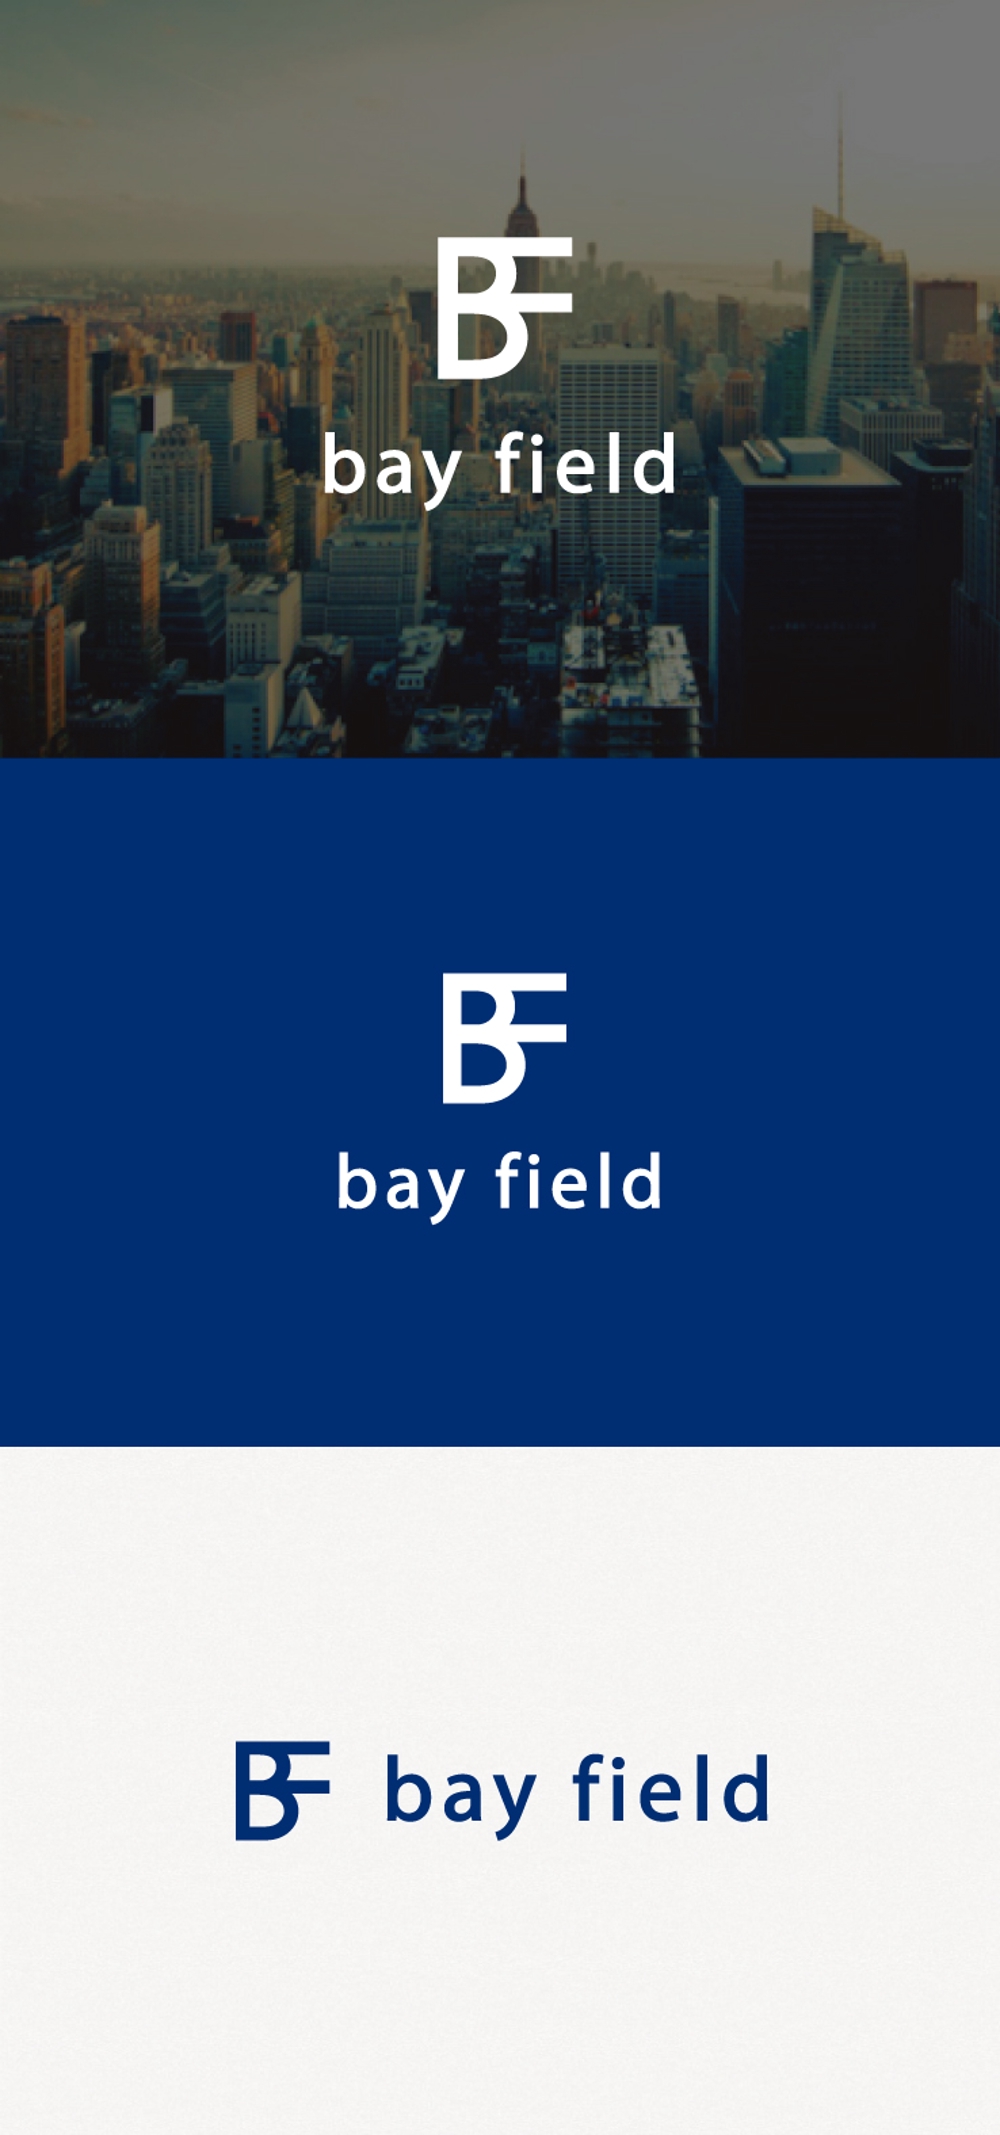 制御盤製作会社「bay field」のロゴ